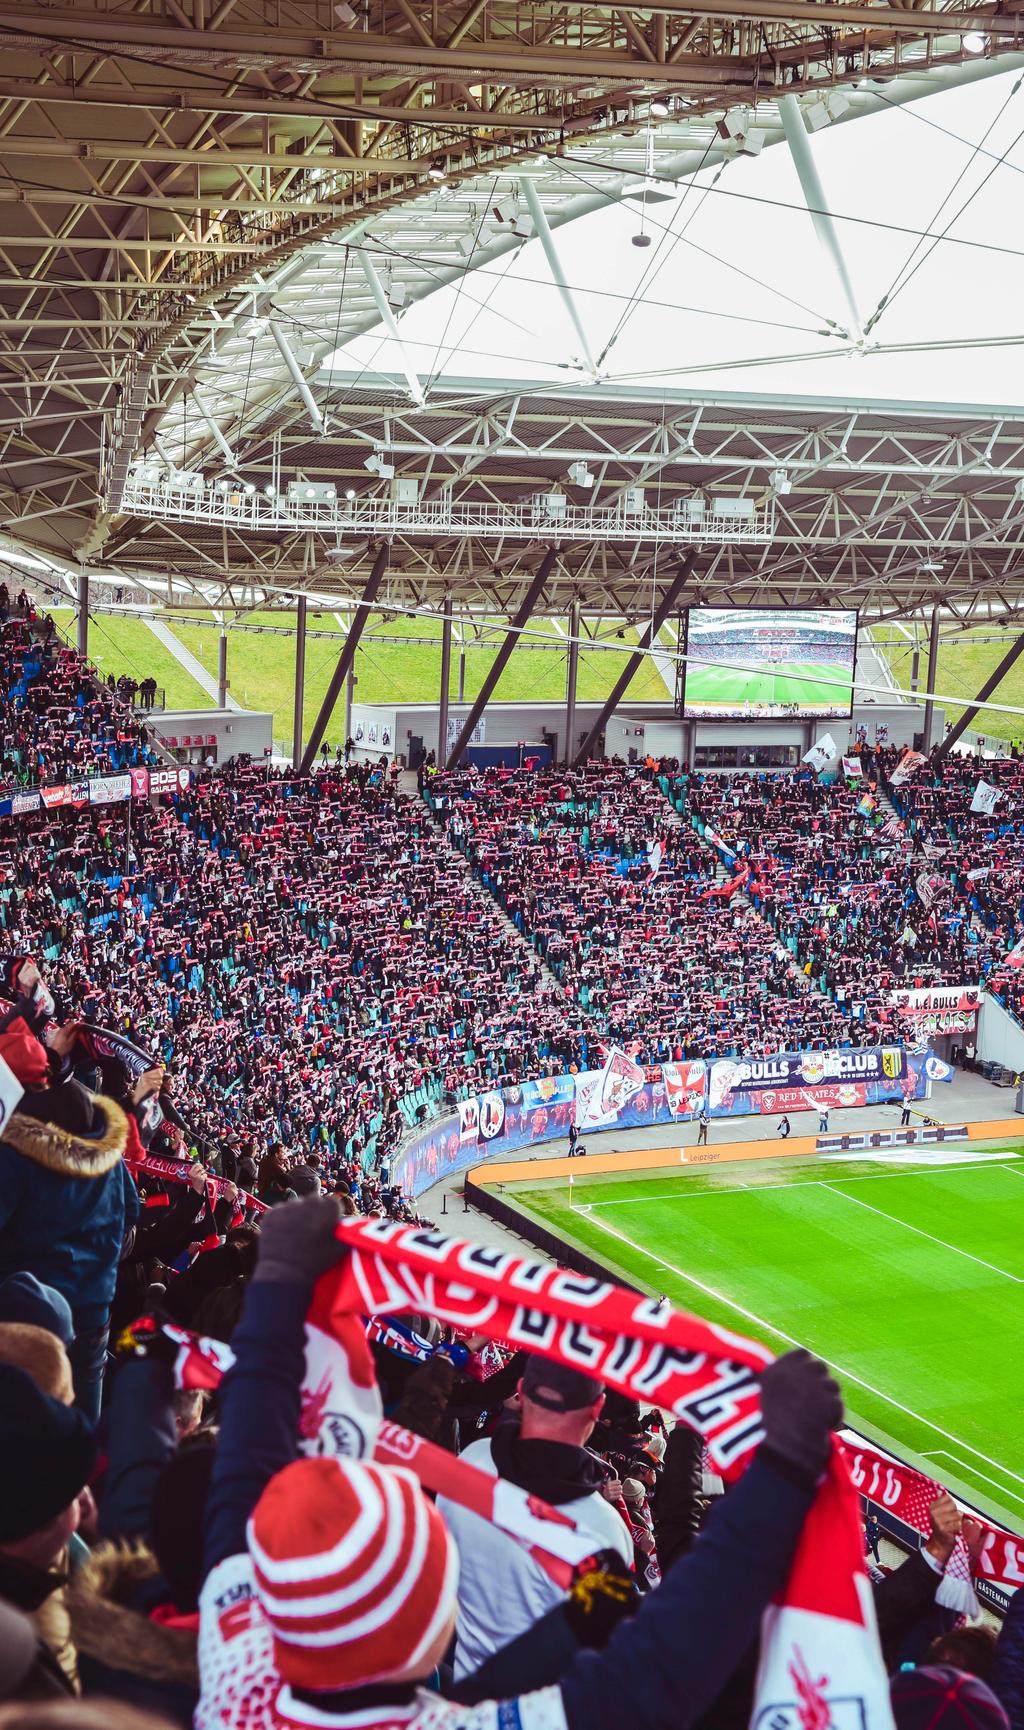 STADION DIE RED BULL ARENA: HEIMVORTEIL FÜR IHRE ZIELE D ie RB Leipzig Familie ist groß, deshalb bietet ihr Wohnzimmer auch Platz für 41.